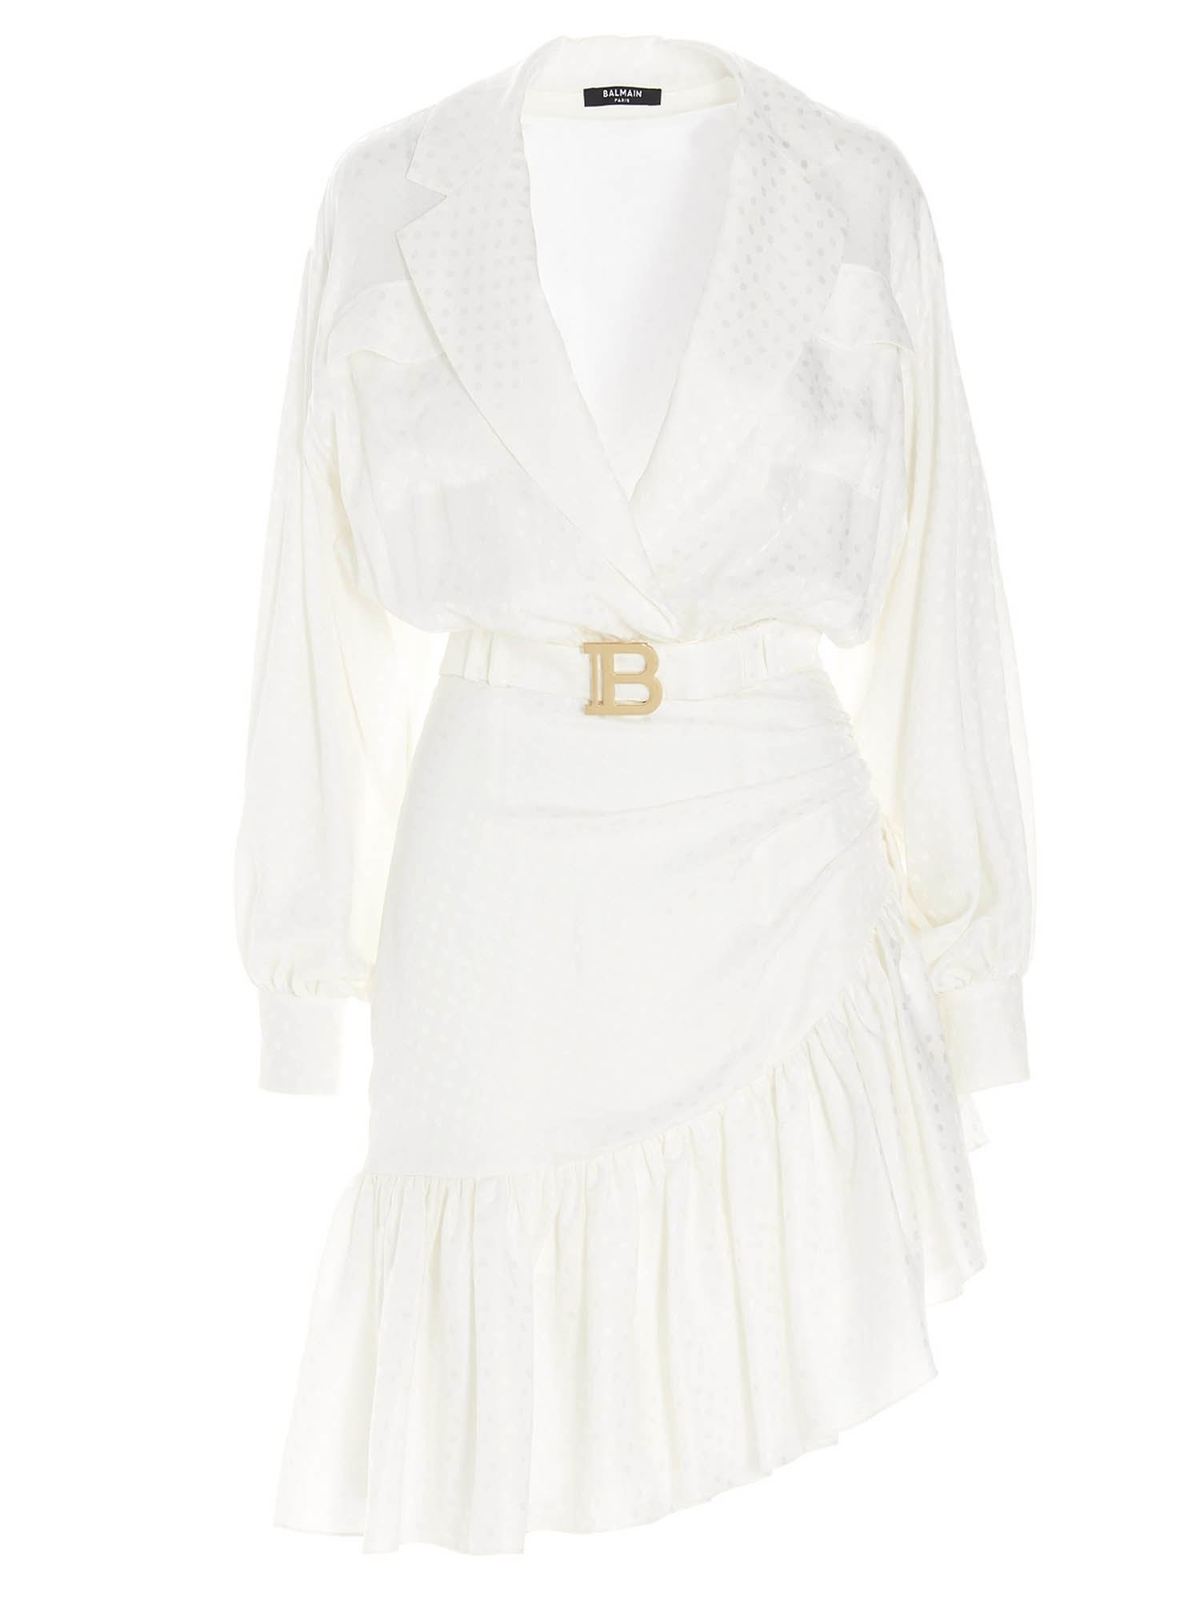 BALMAIN ASYMMETRICAL DRESS IN WHITE